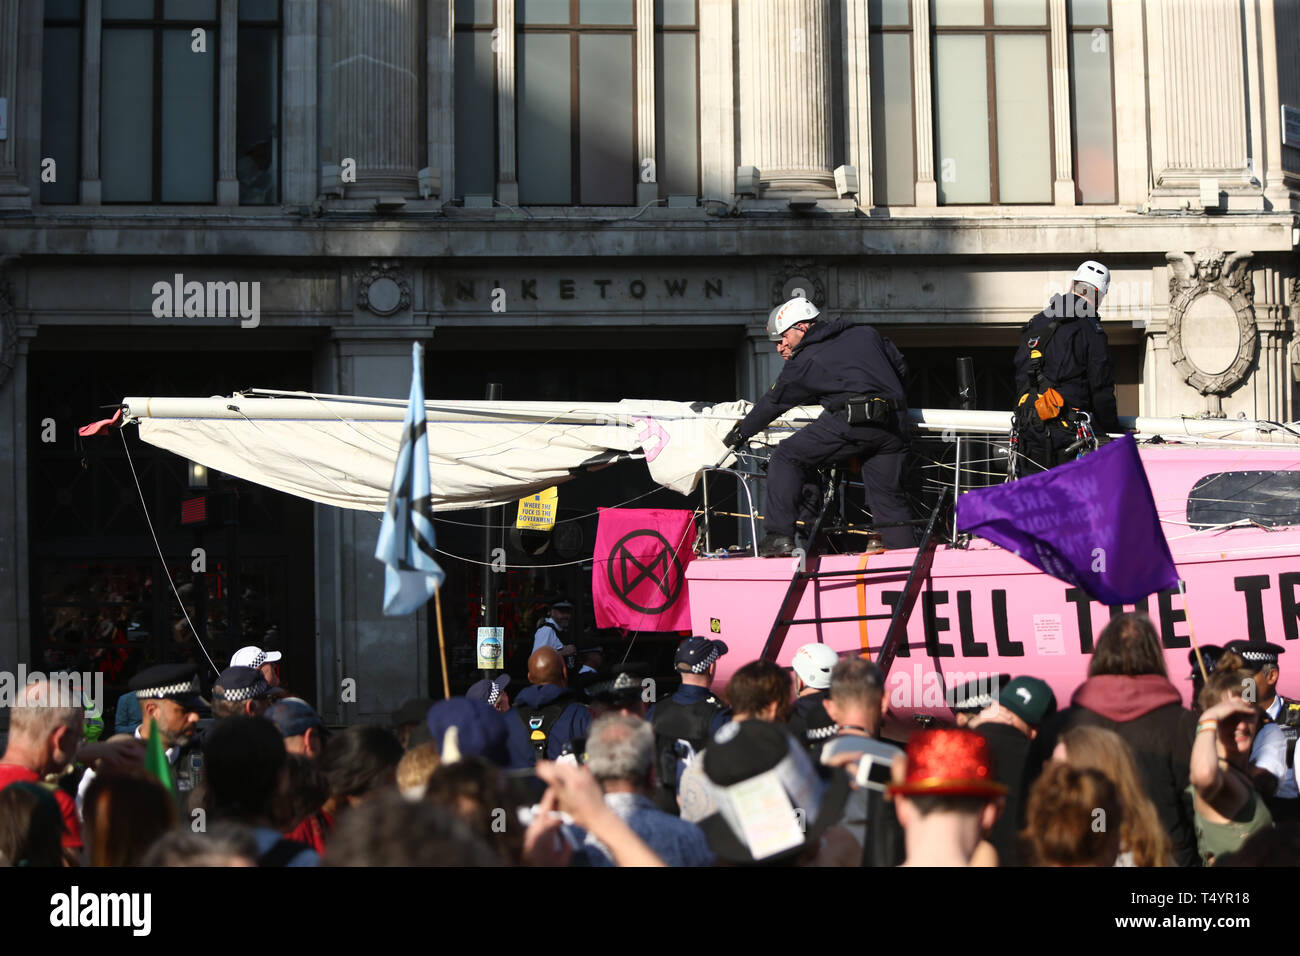 Le démantèlement de la police de la rébellion d'Extinction "Dire la vérité" bateau, alors que les manifestations se poursuivent à Oxford Circus à Londres. Banque D'Images